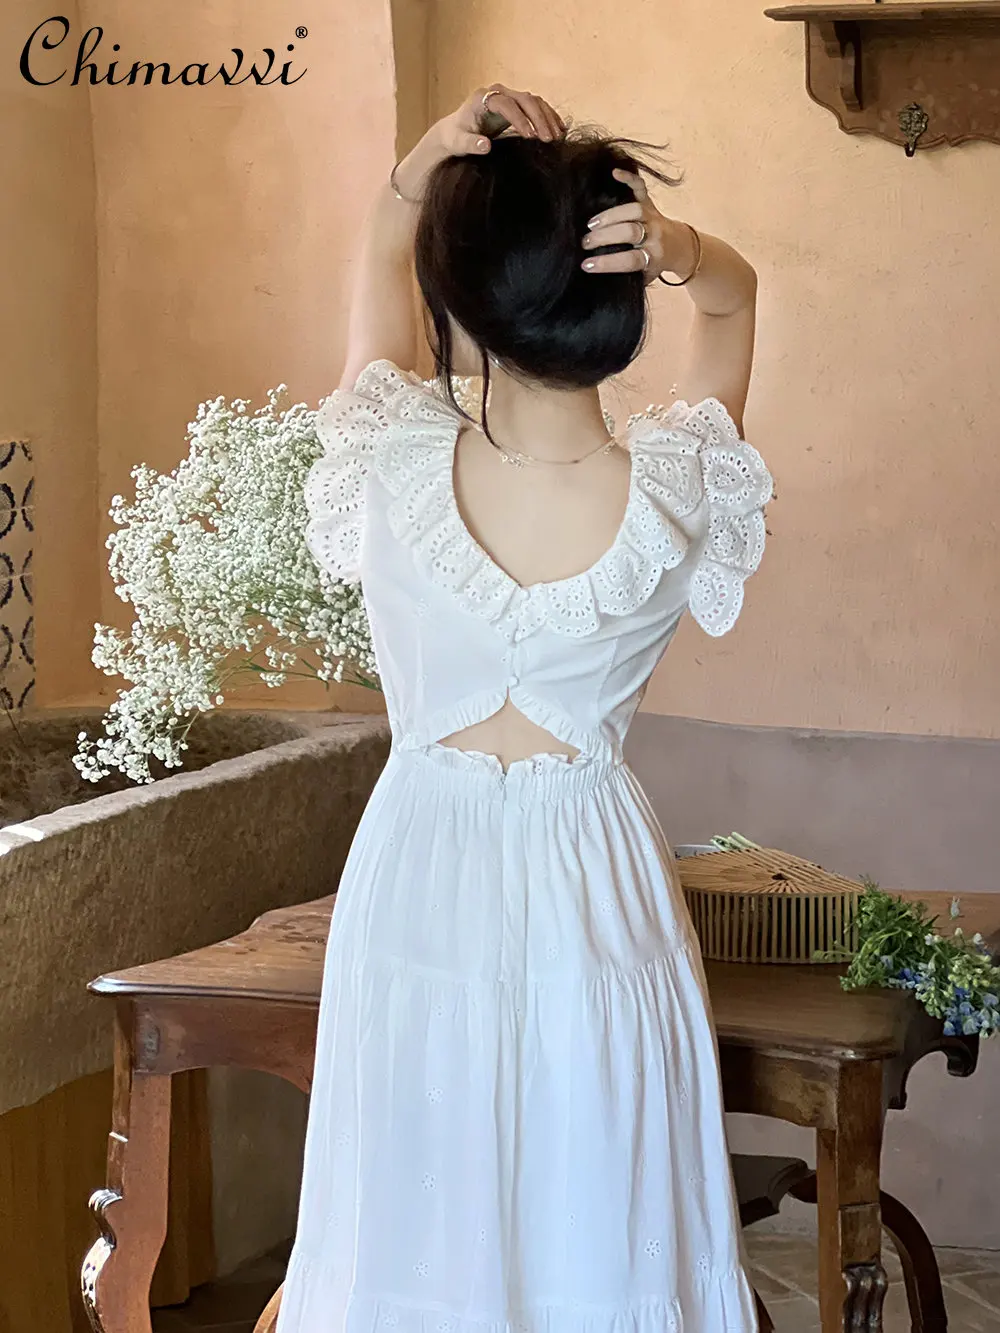 French Style Flying Sleeves White Dress for Women Summer New High Waist Slim White Dress Mid-Length Elegant Women's Lace Dress